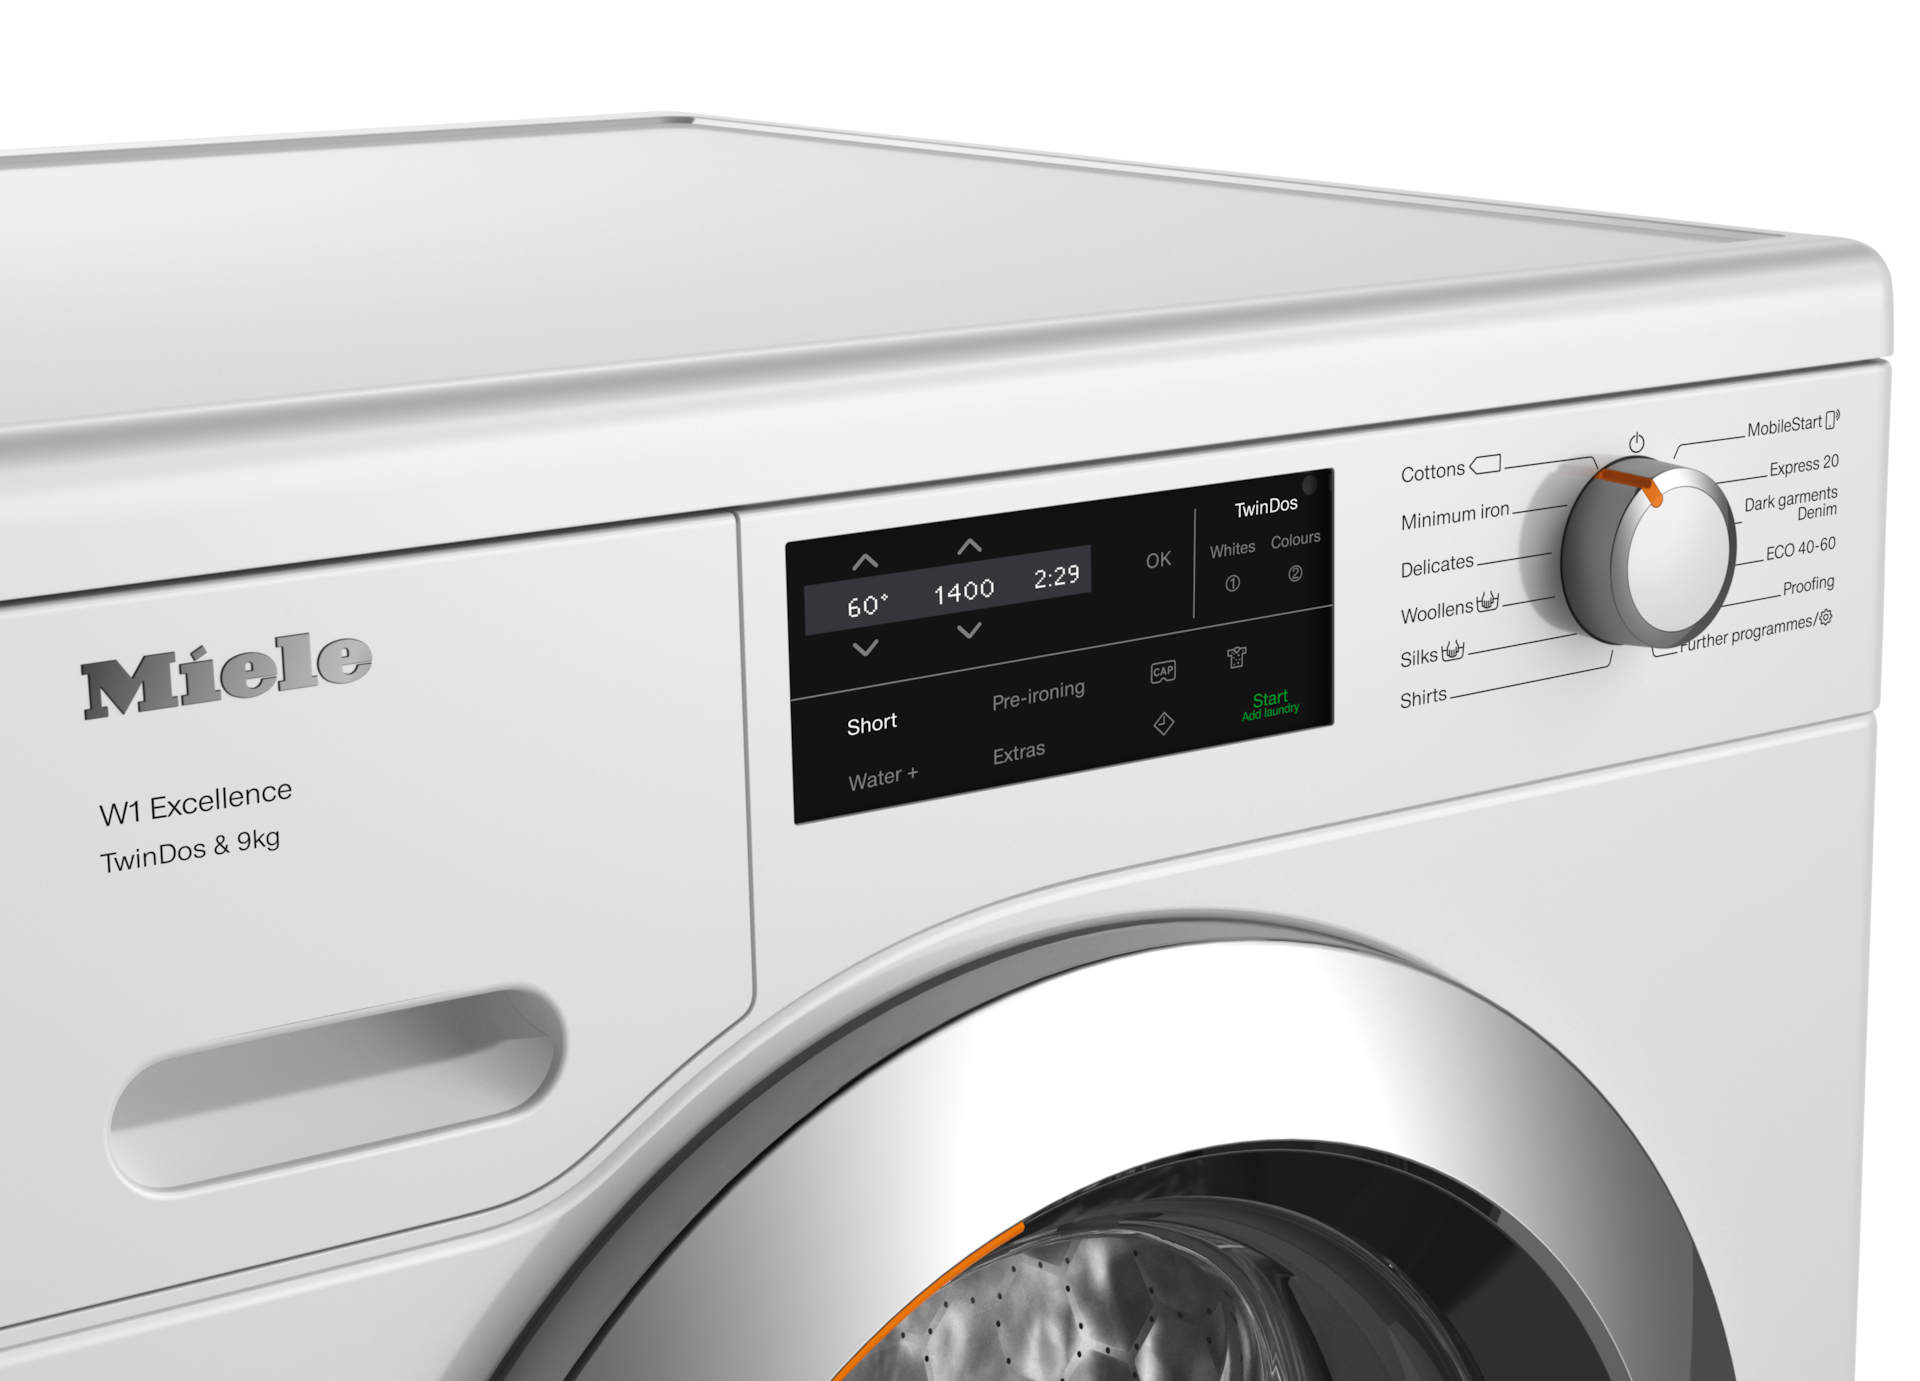 Washing machines - WEG665 WCS TDos&9kg Lotus white - 4